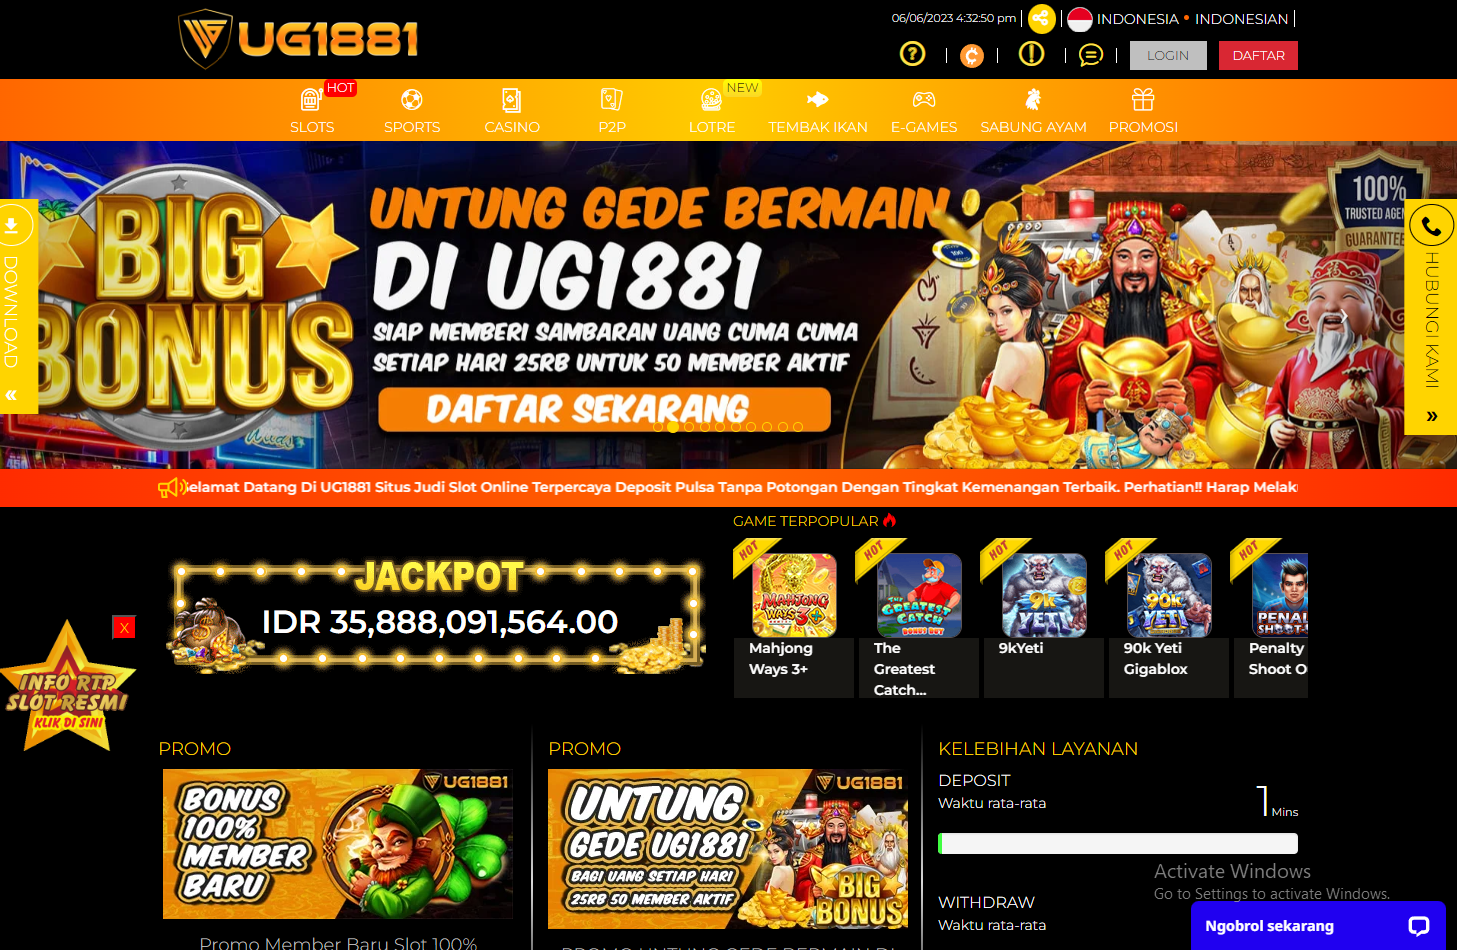 Situs UG SLOT UG1881 Judi Online daftar Slot Deposit Pulsa tanpa potongan